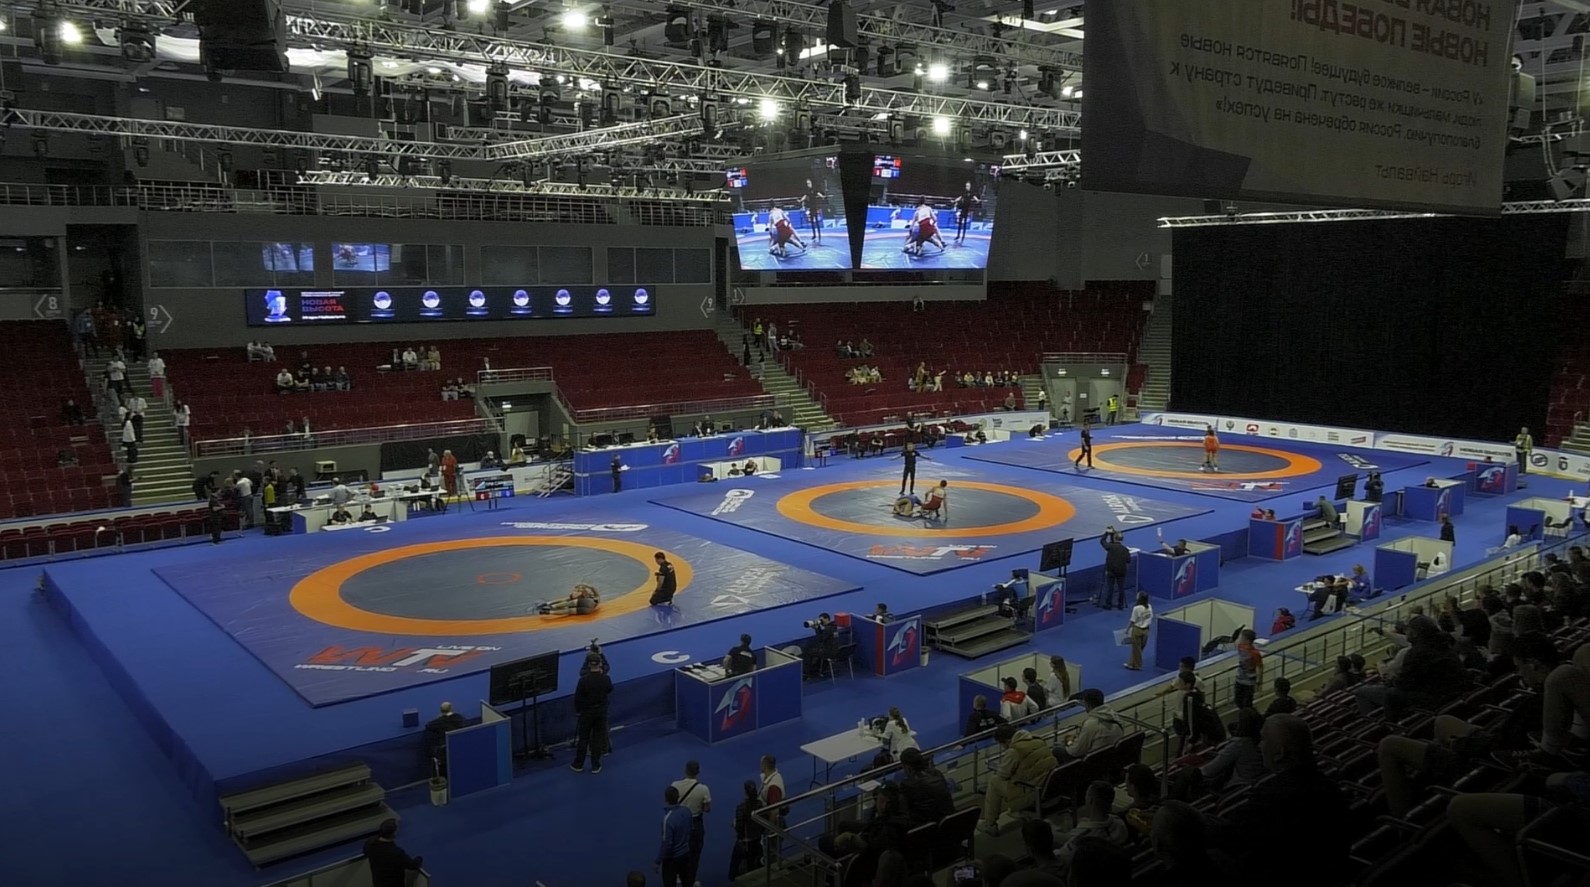 В Самару на турнир по греко-римской борьбе "Новая высота" приехали спортсмены из 10 стран